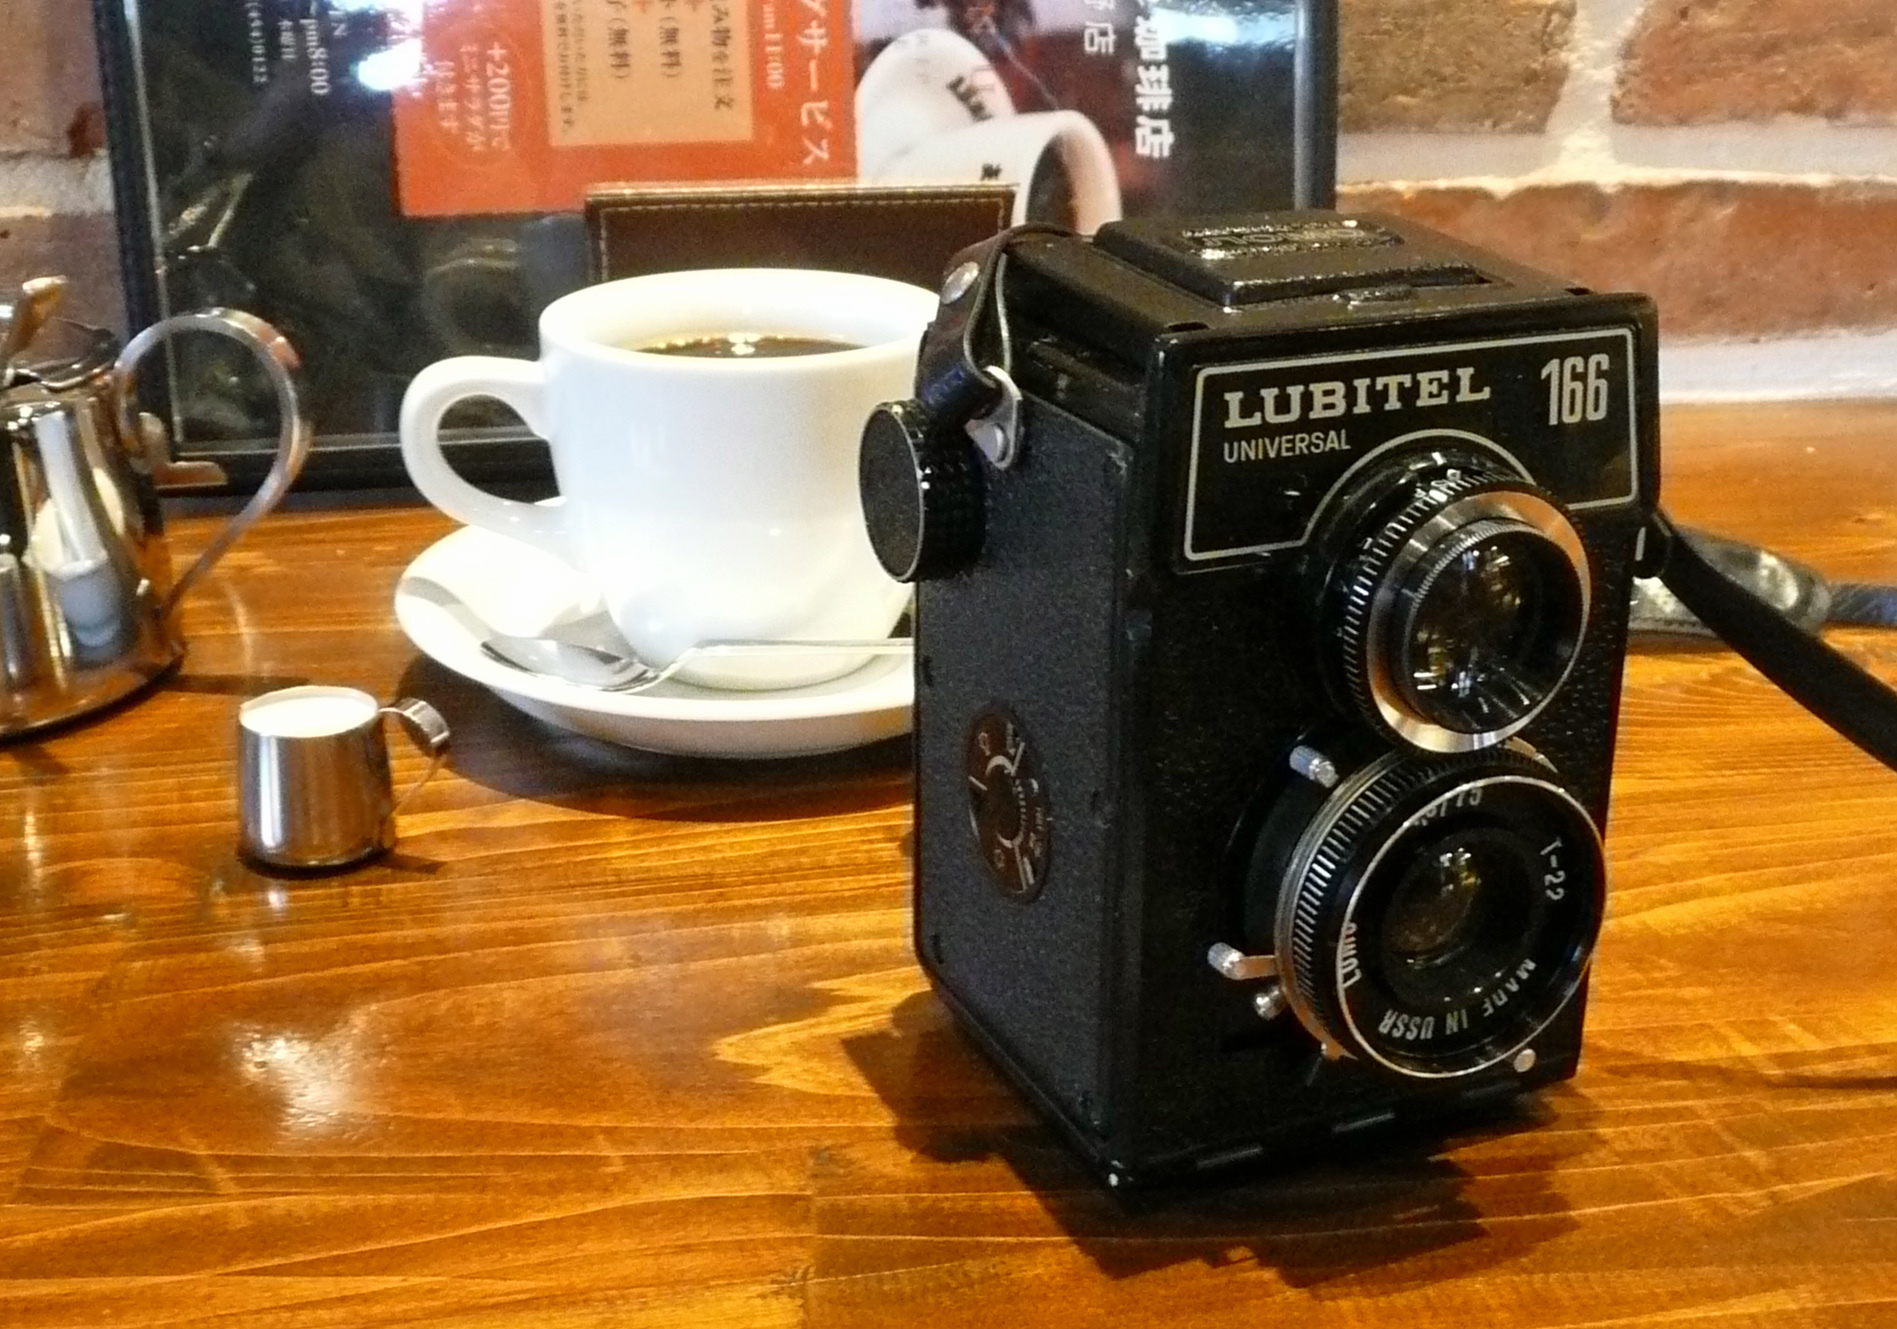 〇 今日の一献 旧ソ連の二眼レフカメラ LOMO LUBITEL 166 UNIVERSAL 